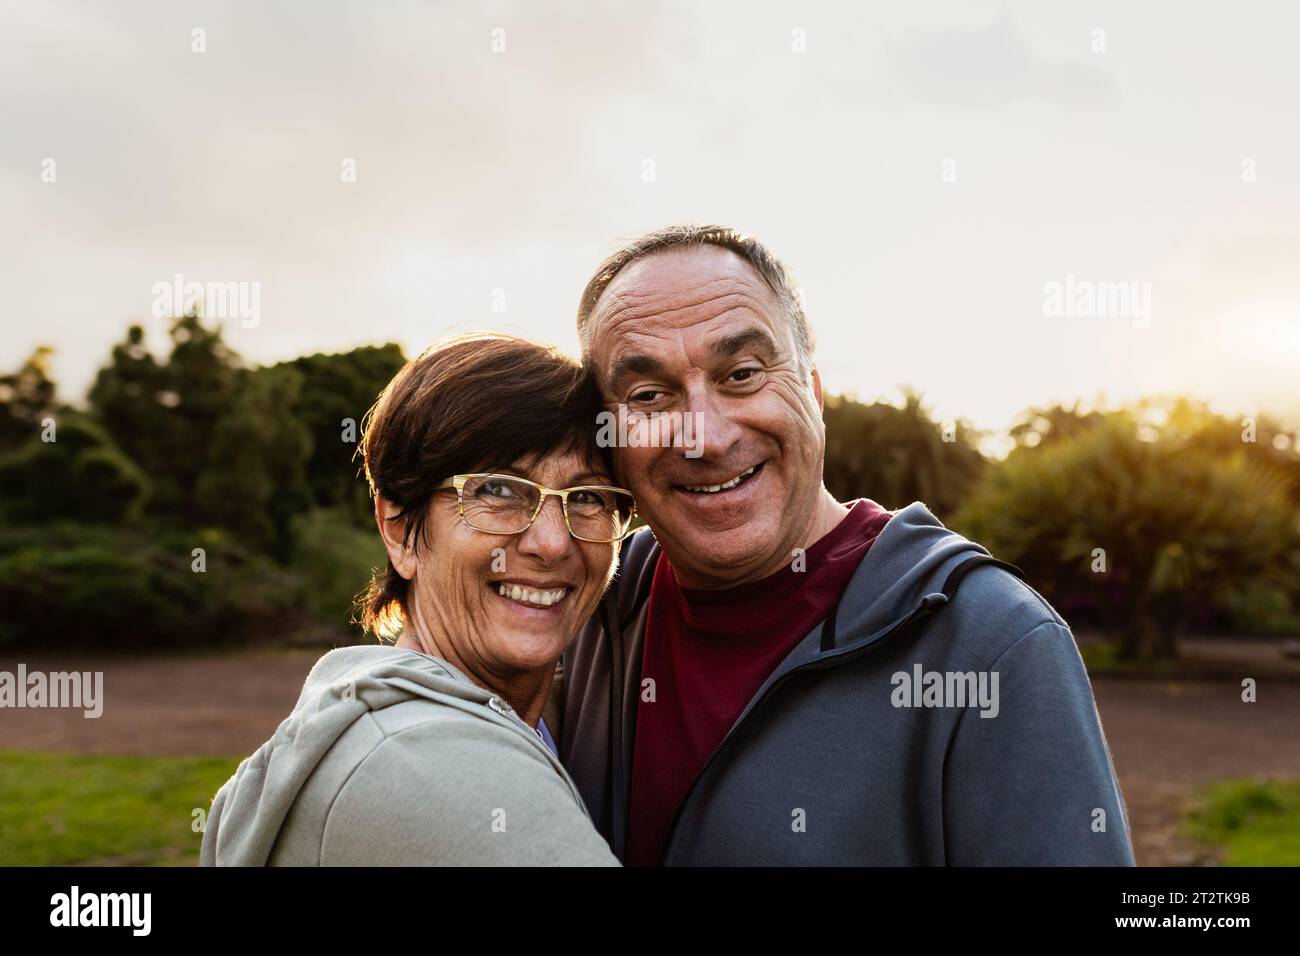 Glückliches Seniorenpaar, das Spaß hat, in die Kamera zu lächeln, nachdem sie in einem öffentlichen Park trainieren Stockfoto